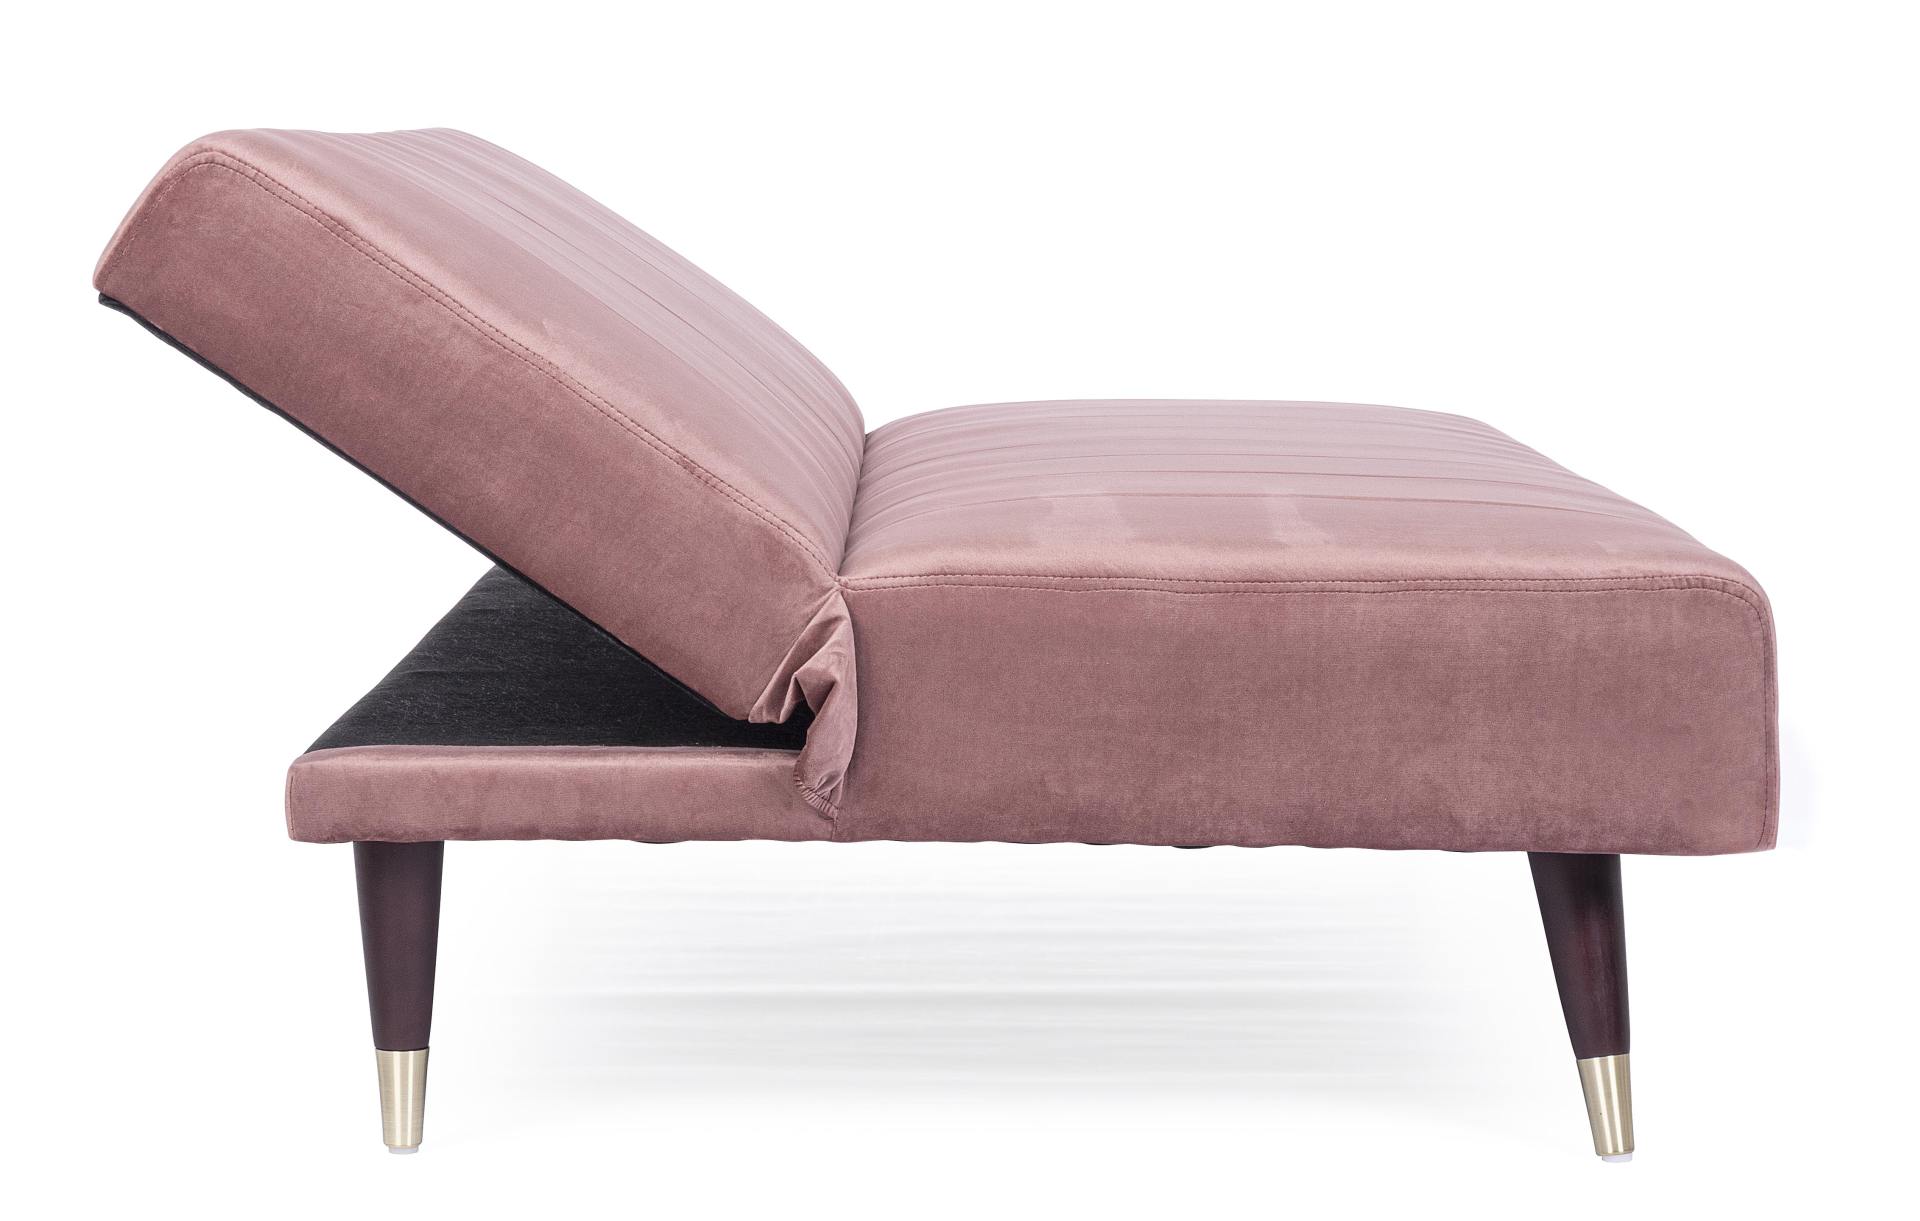 Das Schlafsofa Alma überzeugt mit seinem klassischen Design. Gefertigt wurde es aus Samt, welcher einen rosa Farbton besitzt. Das Gestell ist aus Metall und hat eine schwarzen Farbe. Die Schlaffunktion hat ein Maß von 180x105 cm. Das Sofa ist in der Ausfü